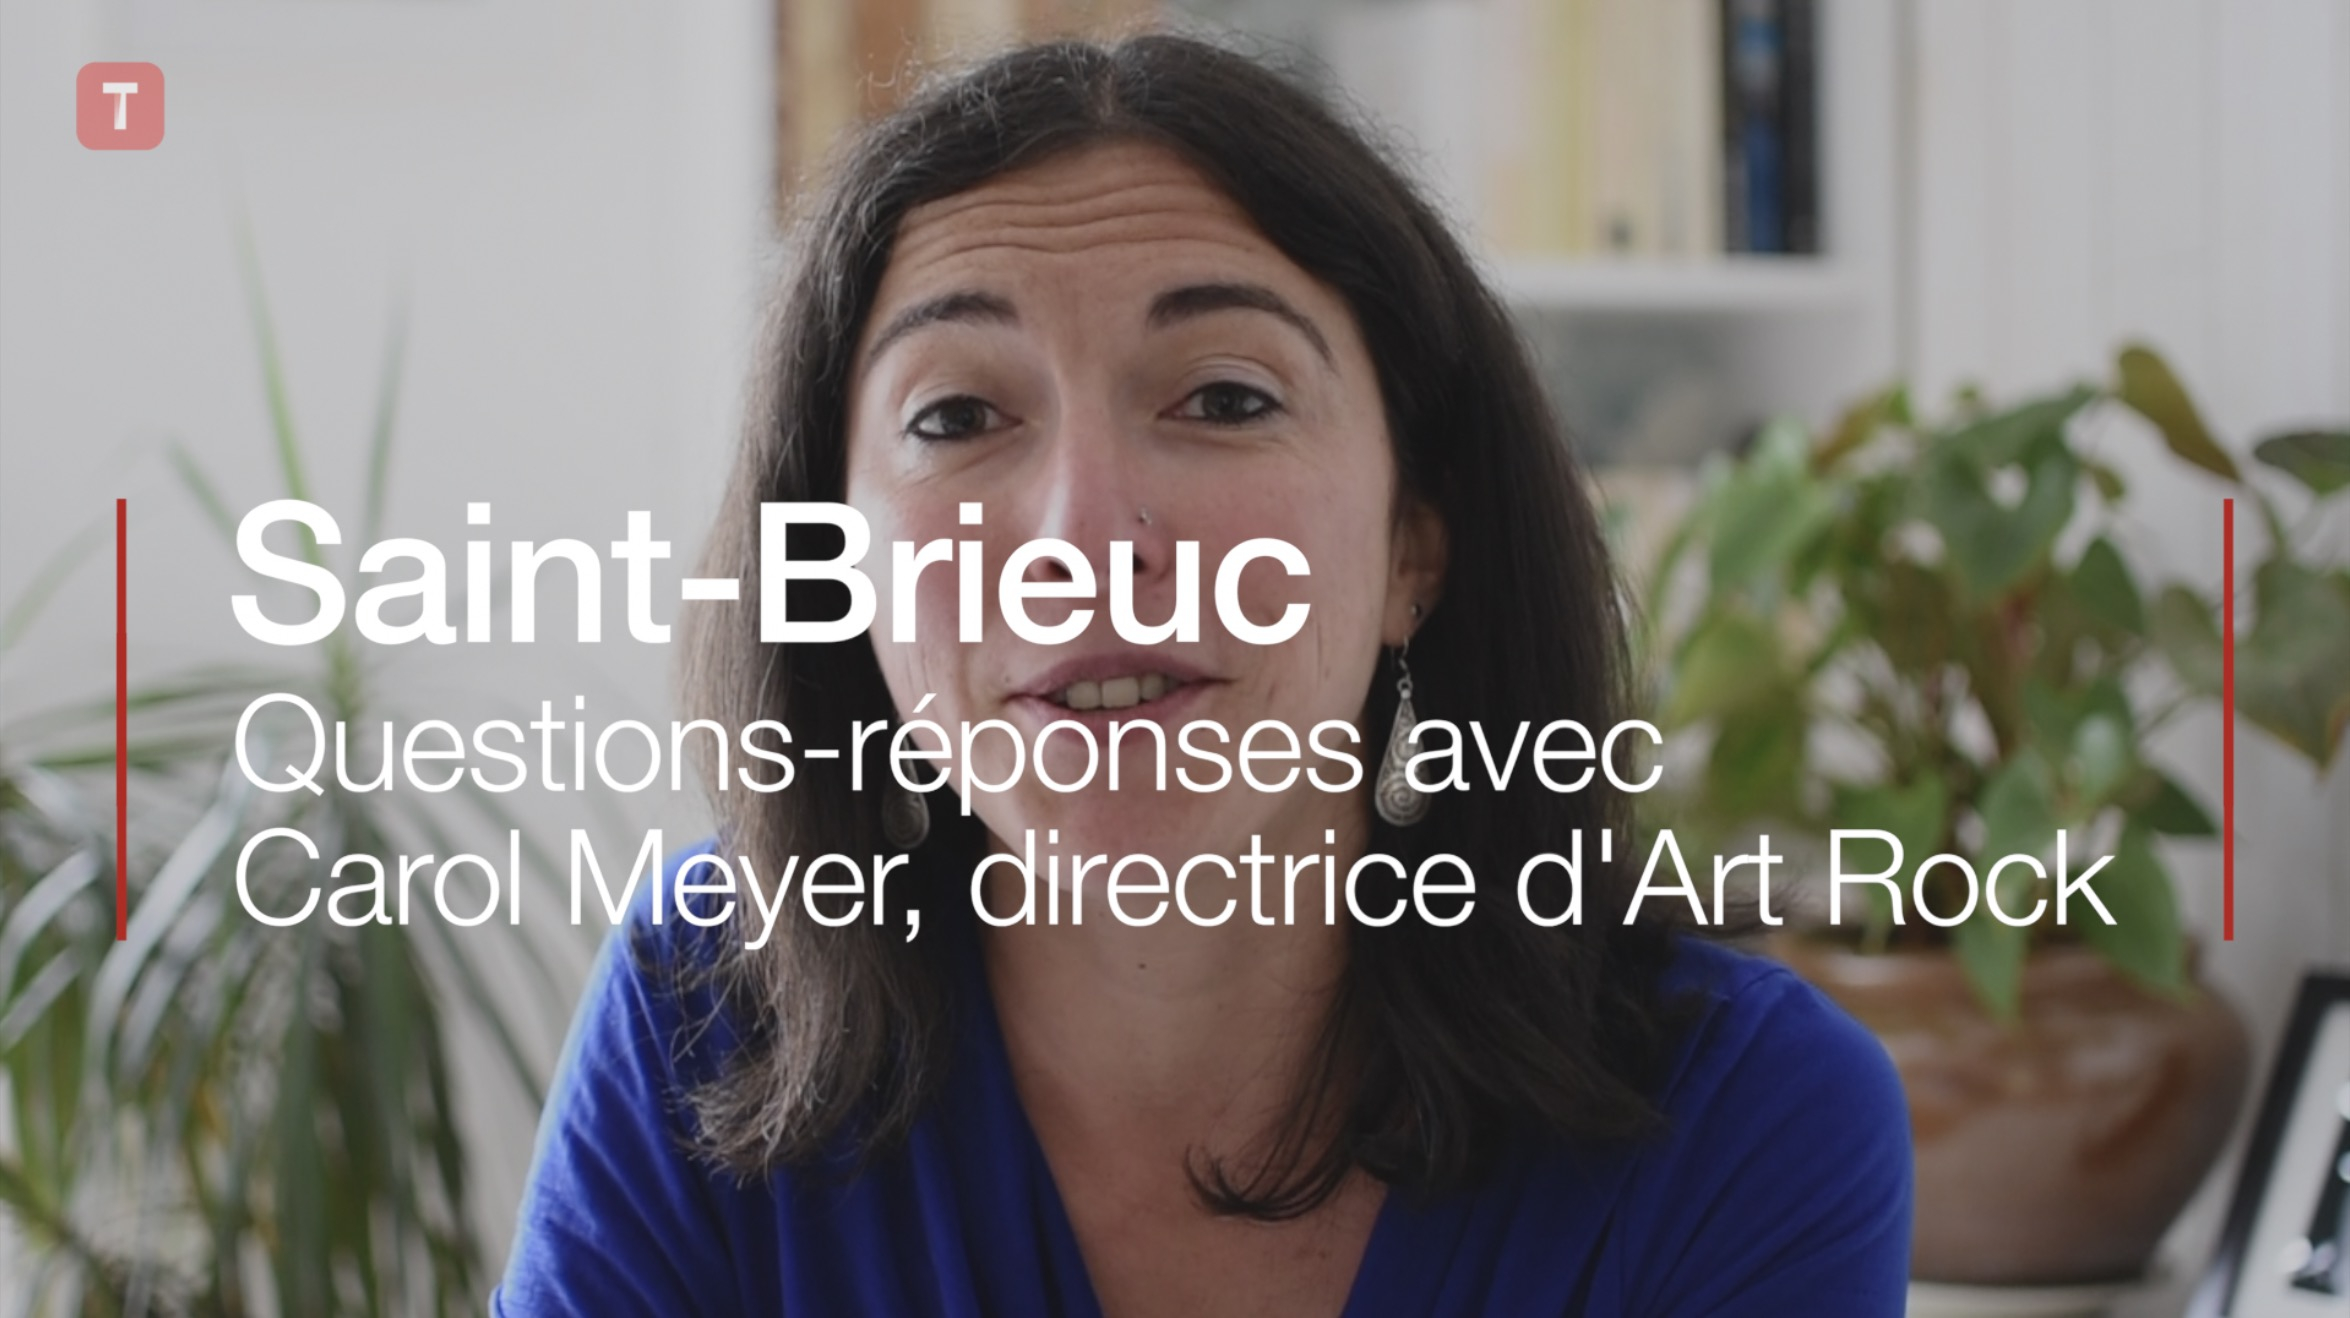 Saint-Brieuc. Questions-réponses avec Carol Meyer, directrice d'Art Rock (Le Télégramme)